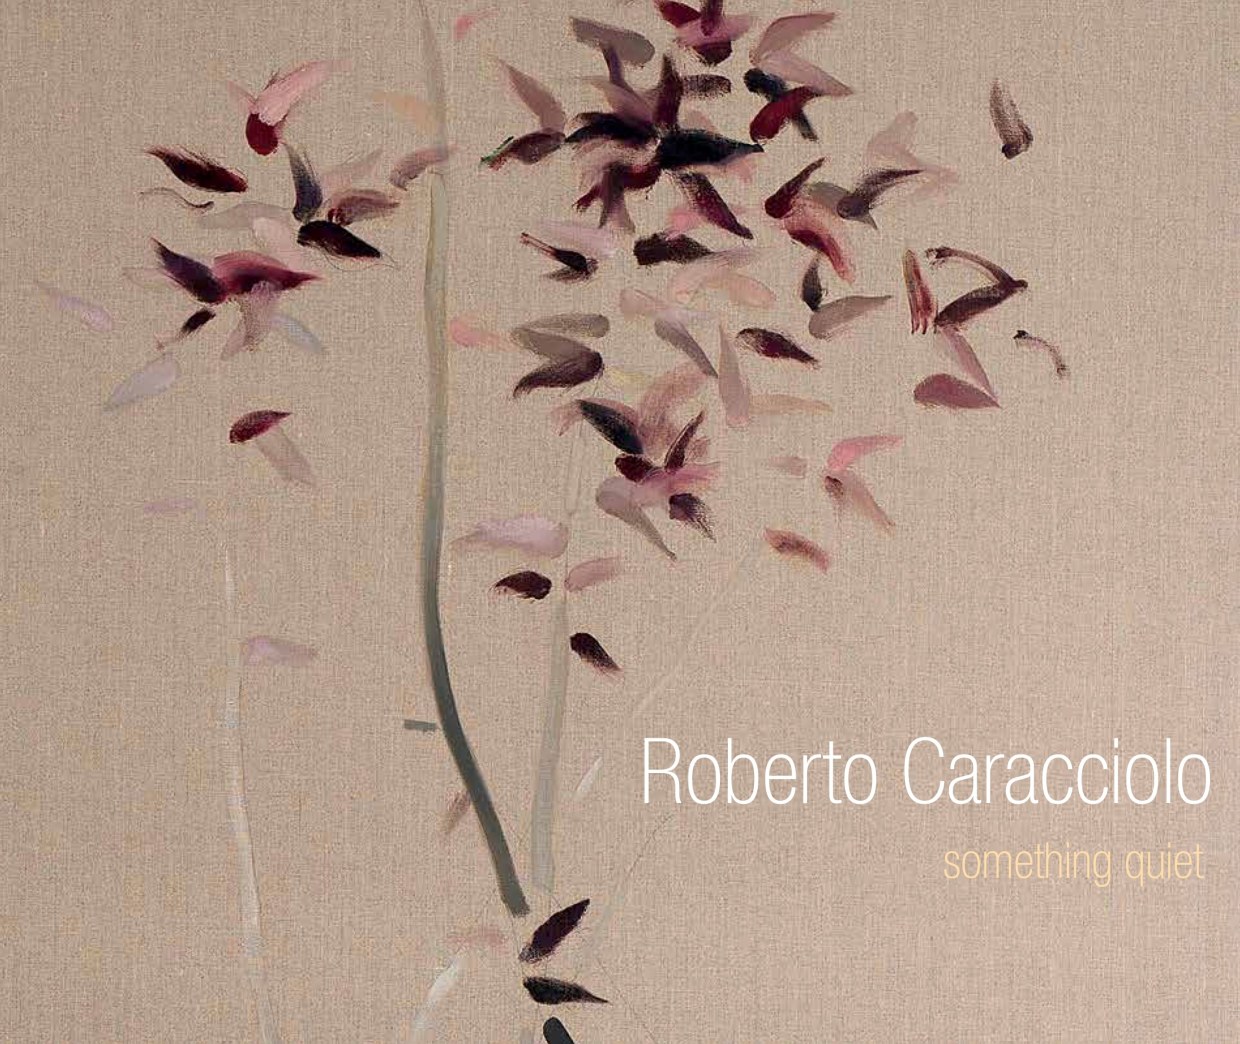 Roberto Caracciolo: Something Quiet exhibition catalogue